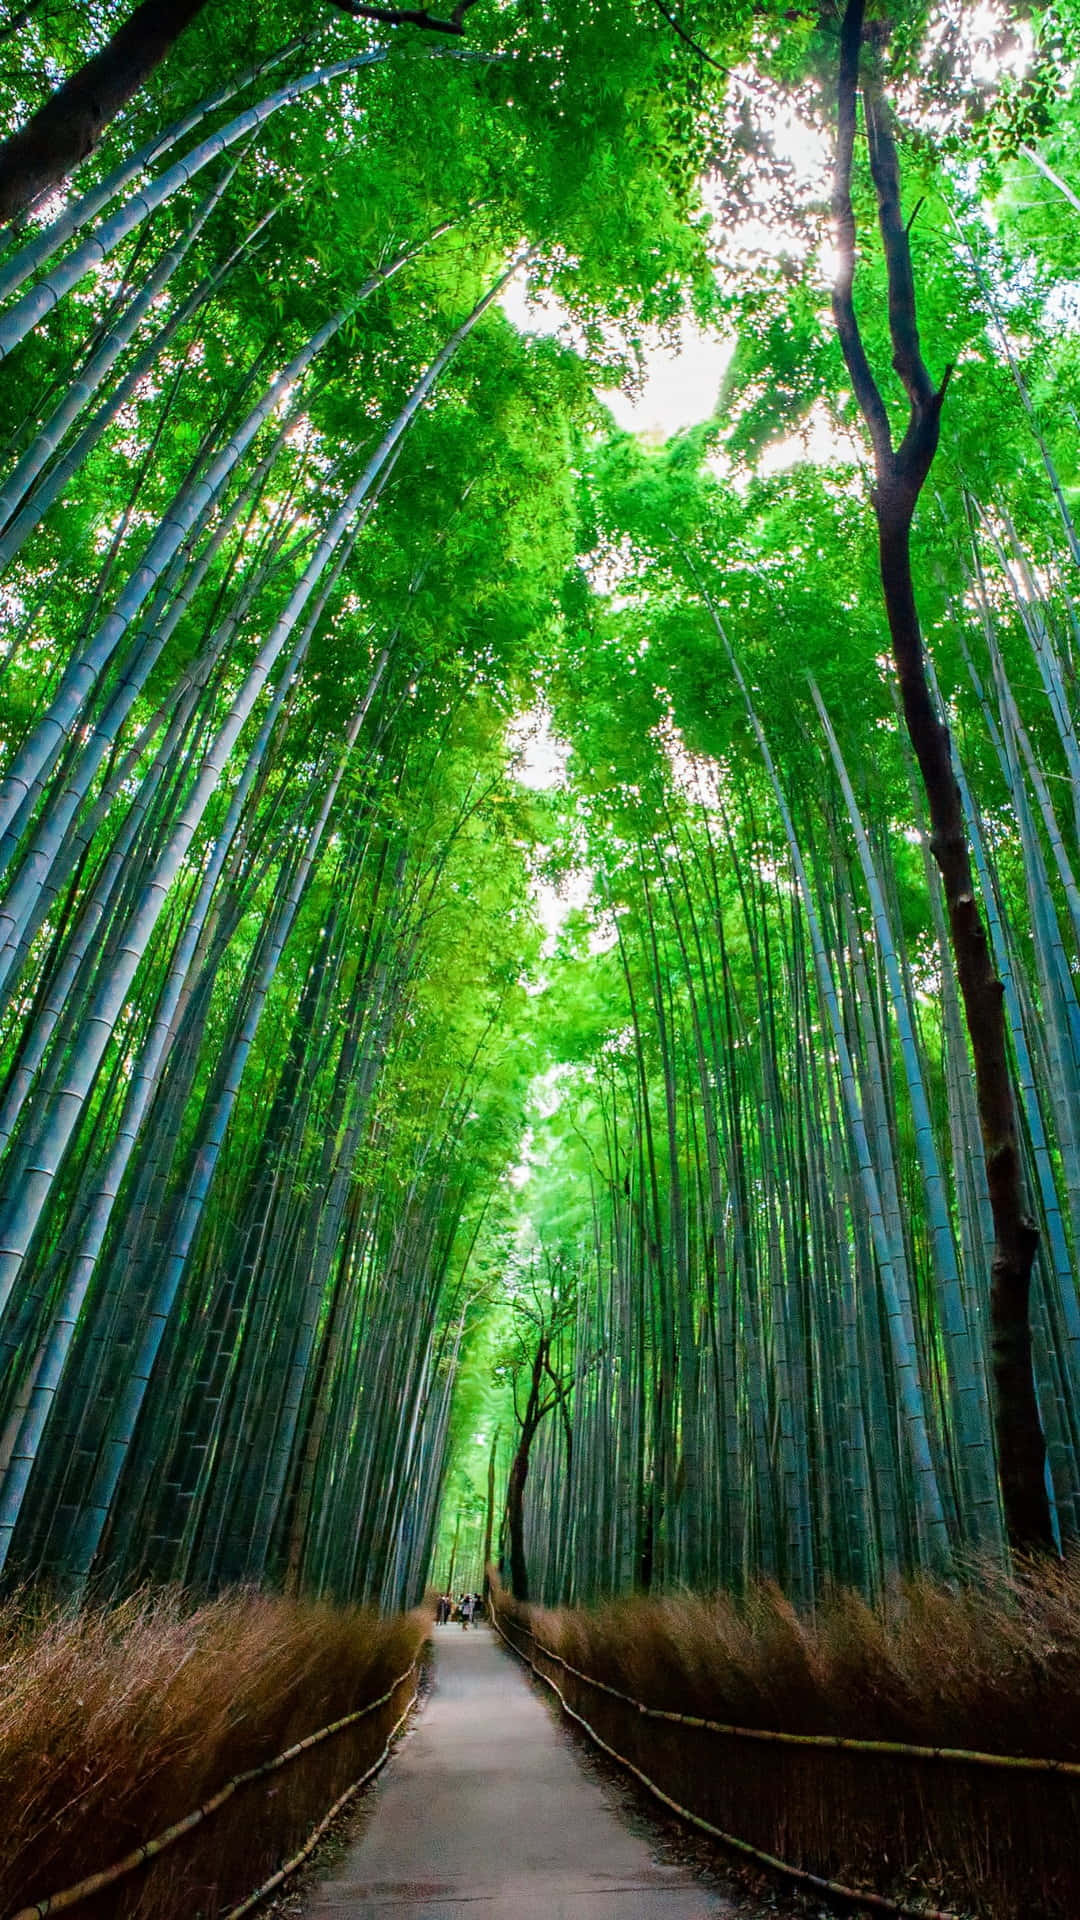 Tag et åndedrag af frisk luft i en fredelig bamboo skov. Wallpaper